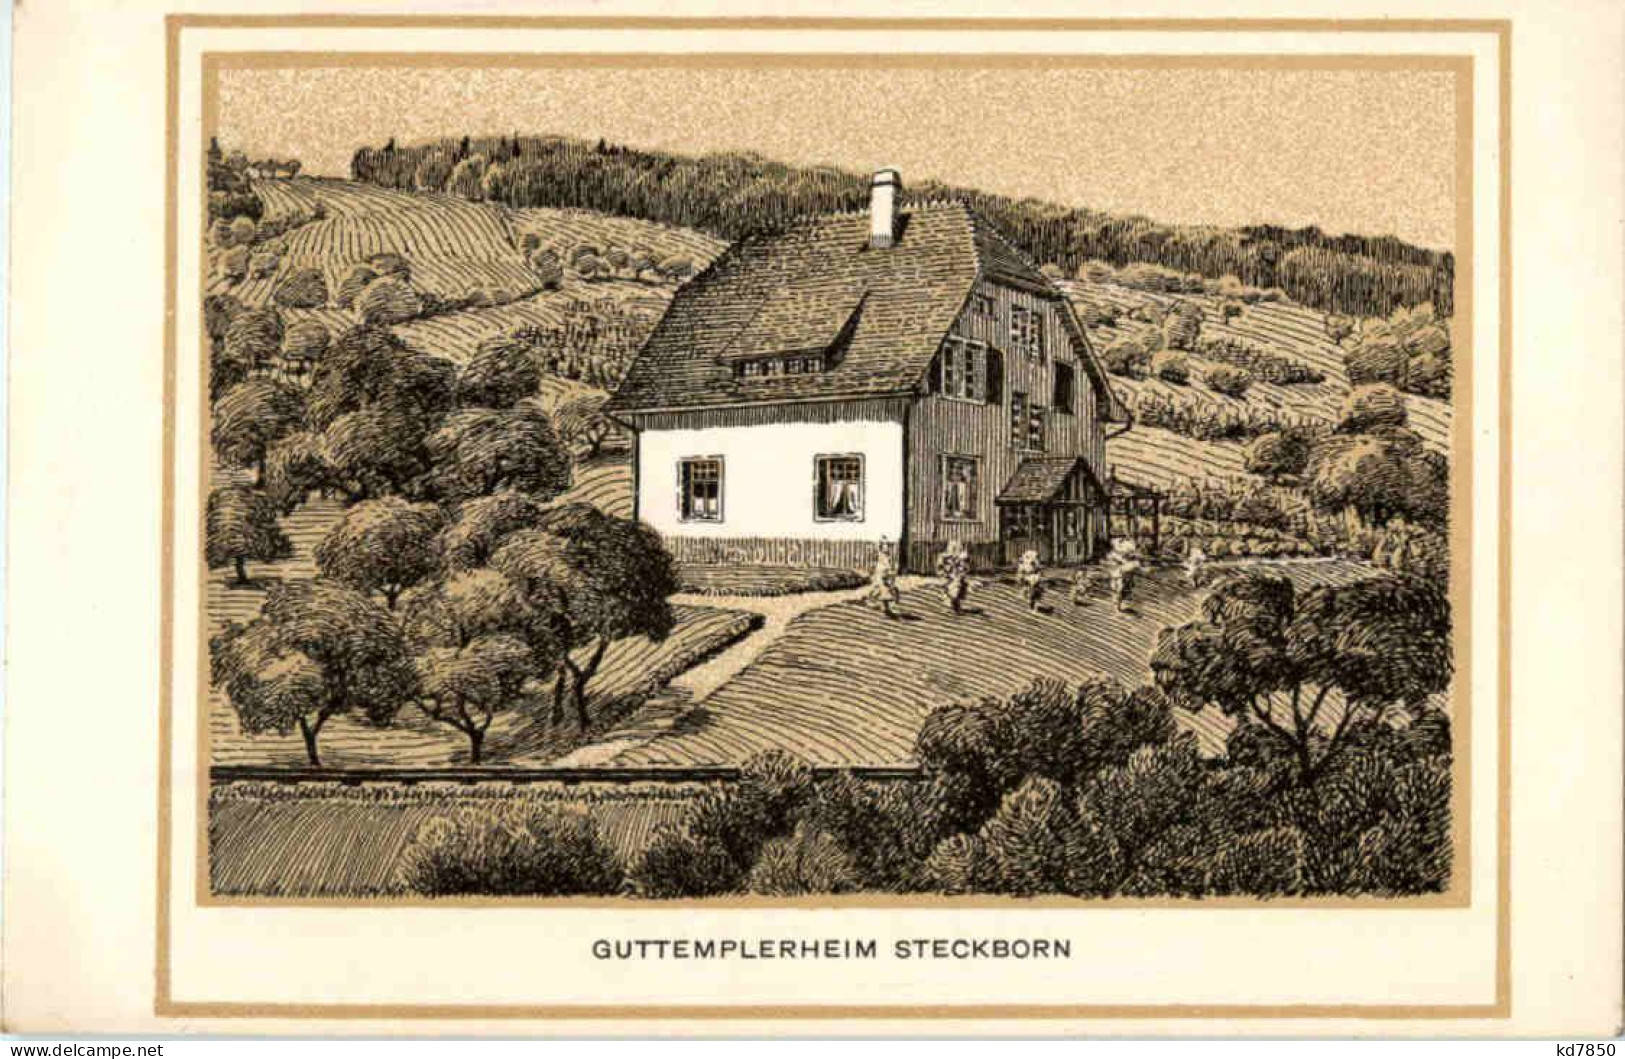 Guttemplerheim Steckborn - Steckborn